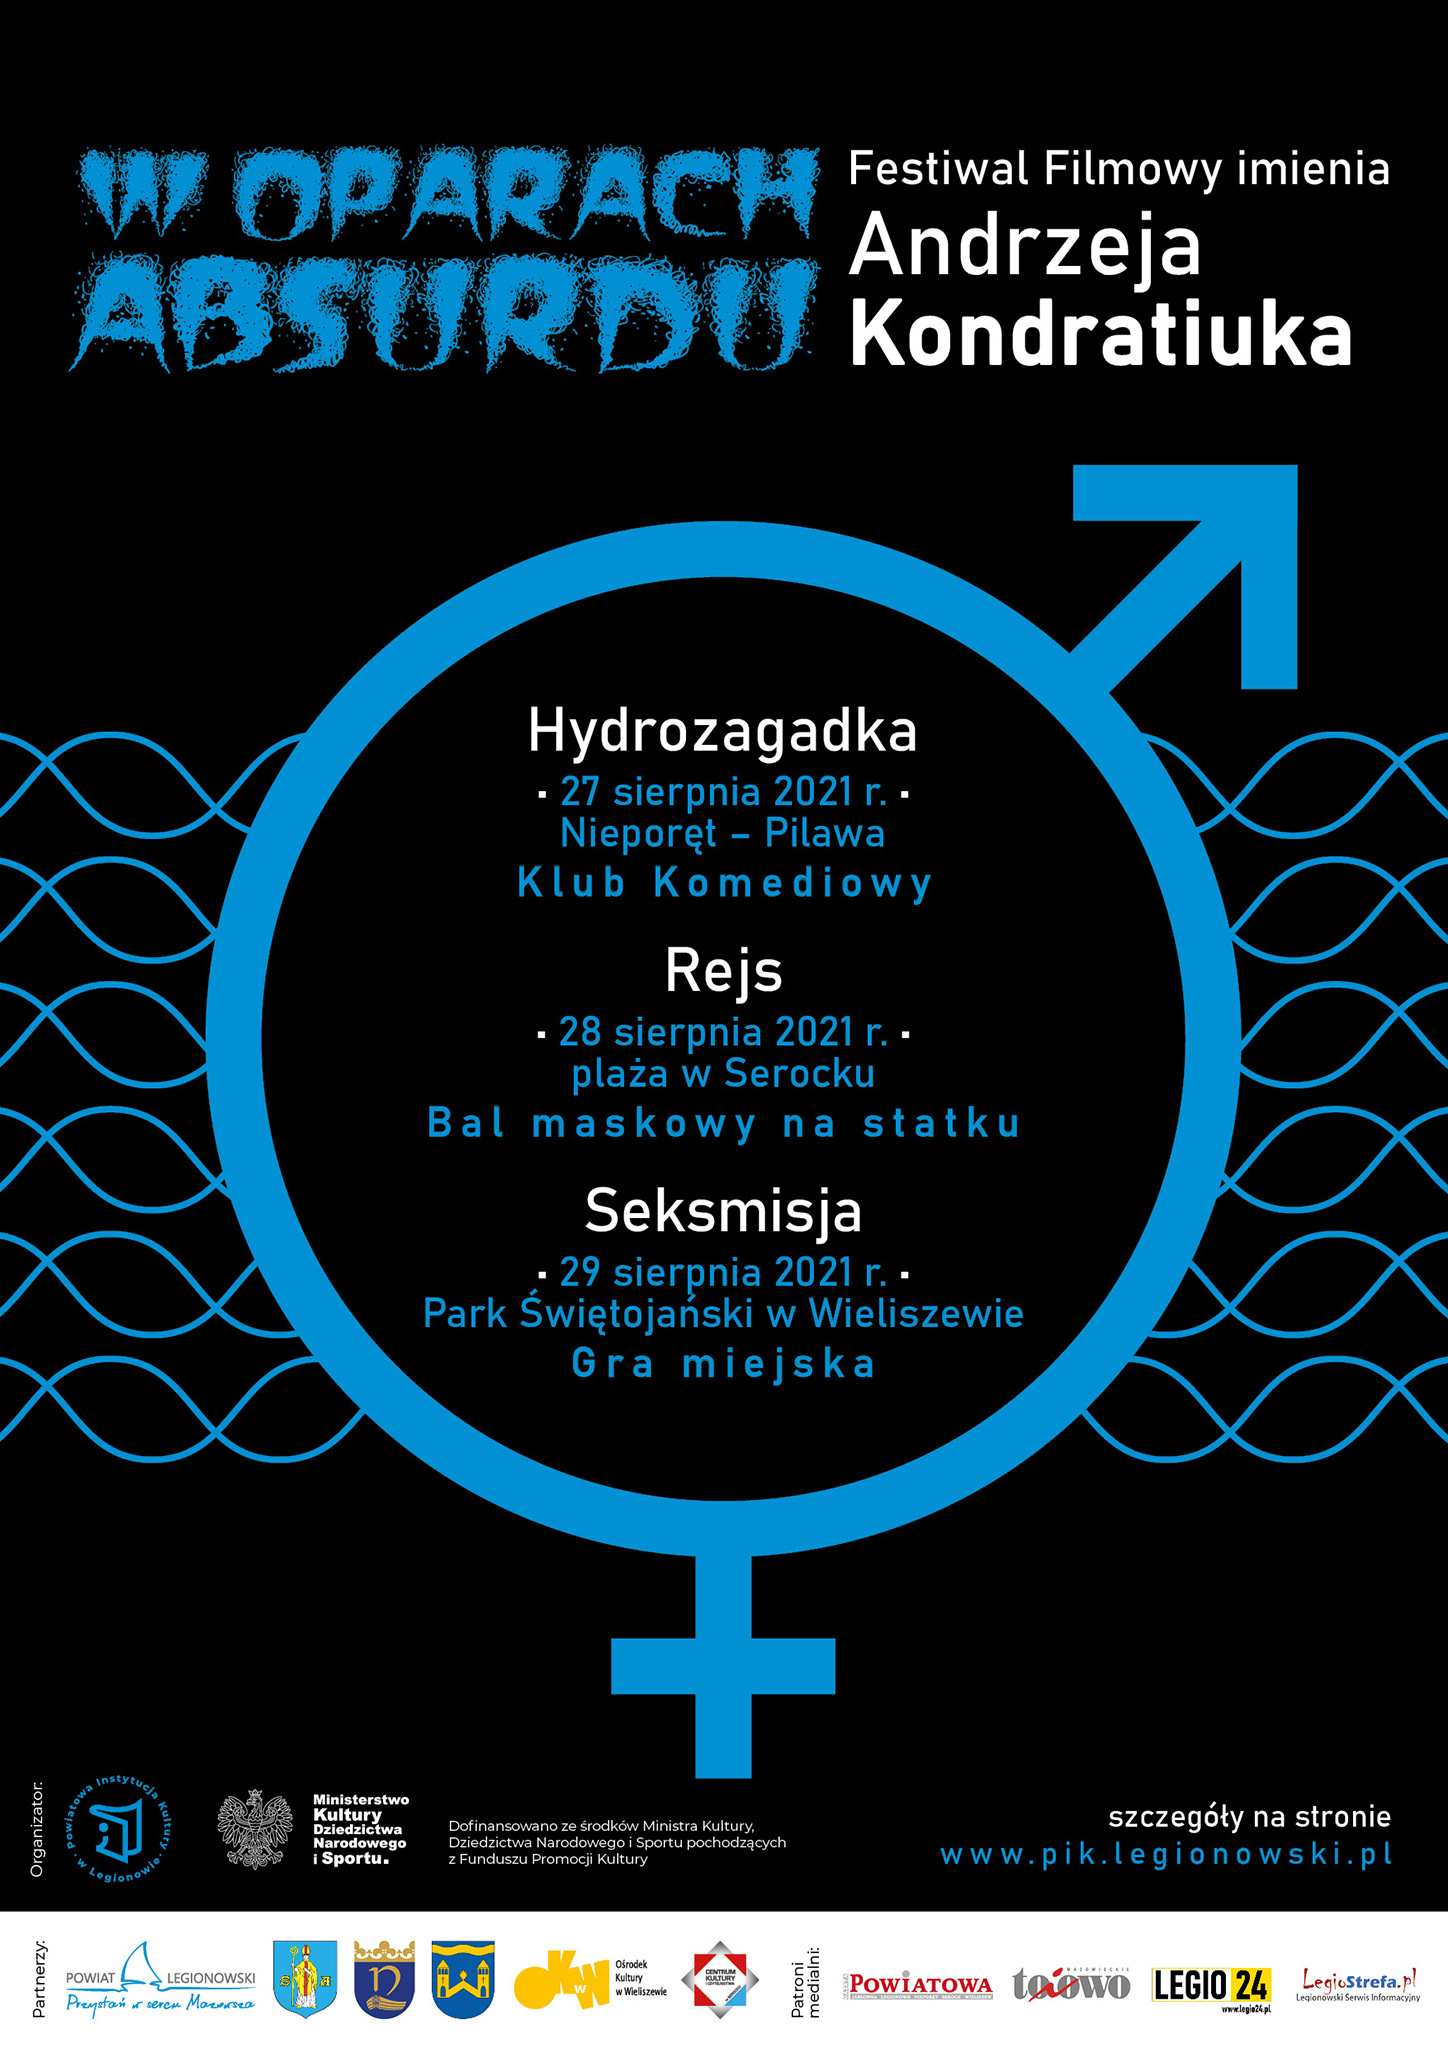 plakat festiwalu filmowego (czarne tło, niebieski element graficzny: koło z żeńskim krzyżykiem na dole i męską strzałką na górze)